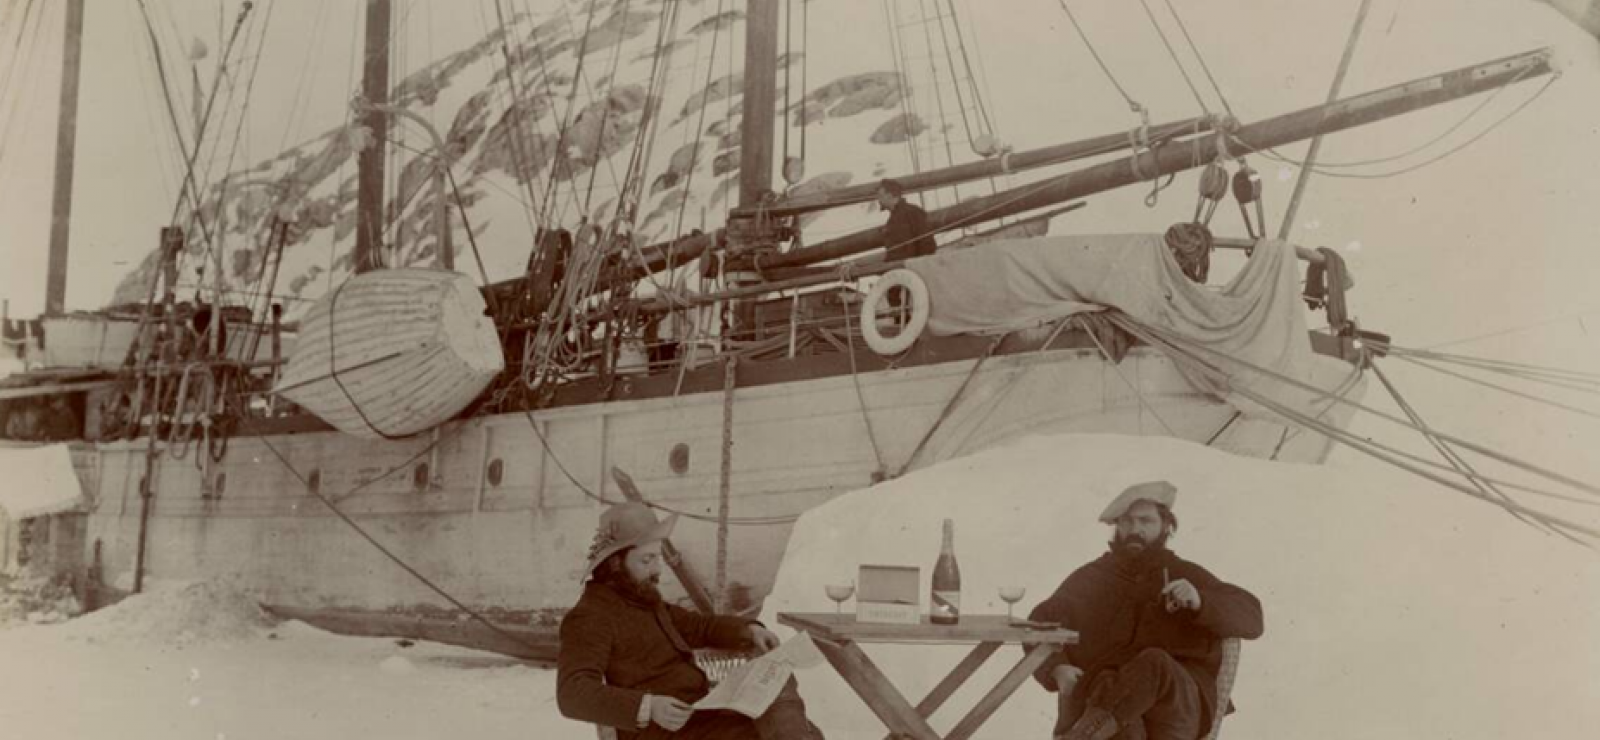 Un navire et son équipage, prisonniers sur la banquise - 1904 - île Wandel 